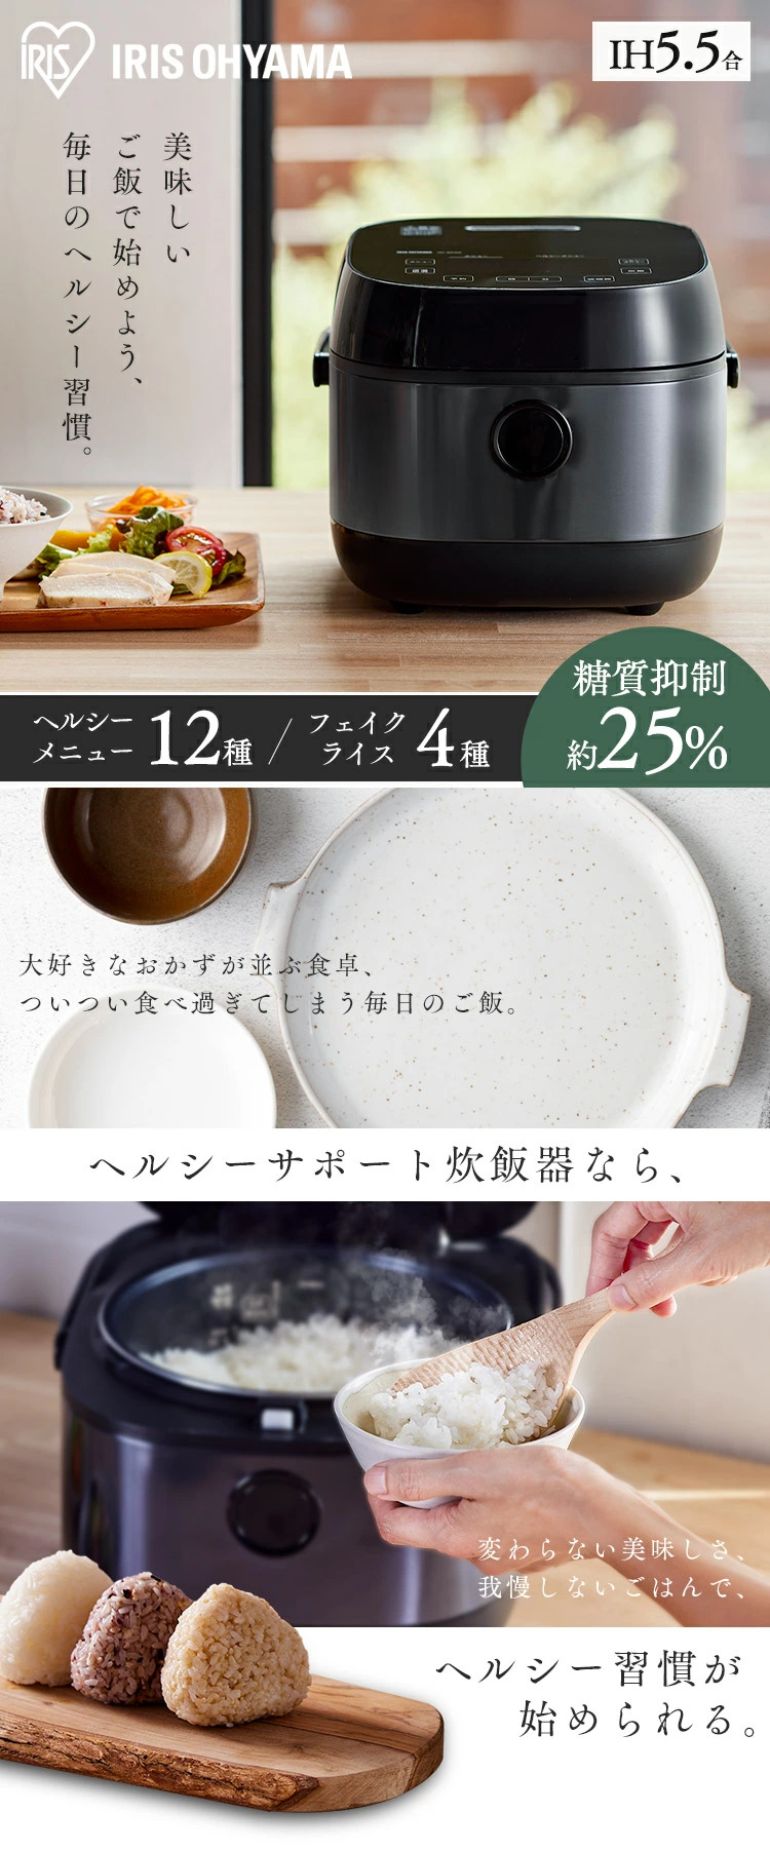 ☆新品未使用☆アイリスオーヤマ ヘルシーサポート IH炊飯ジャー 5.5合炊き